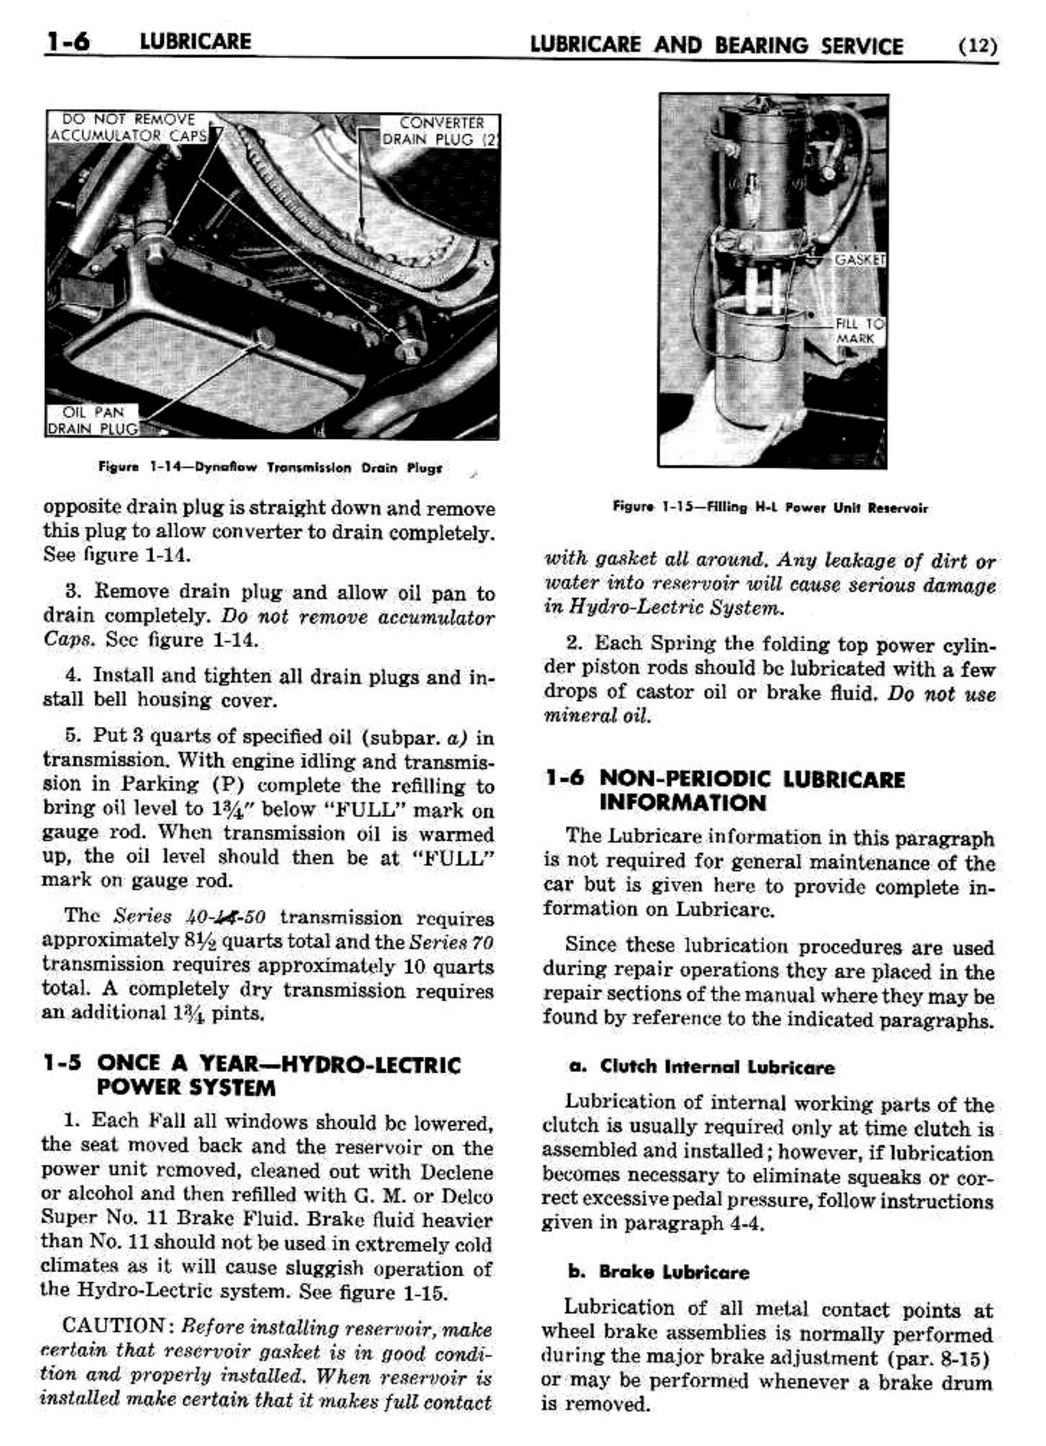 n_02 1951 Buick Shop Manual - Lubricare-006-006.jpg